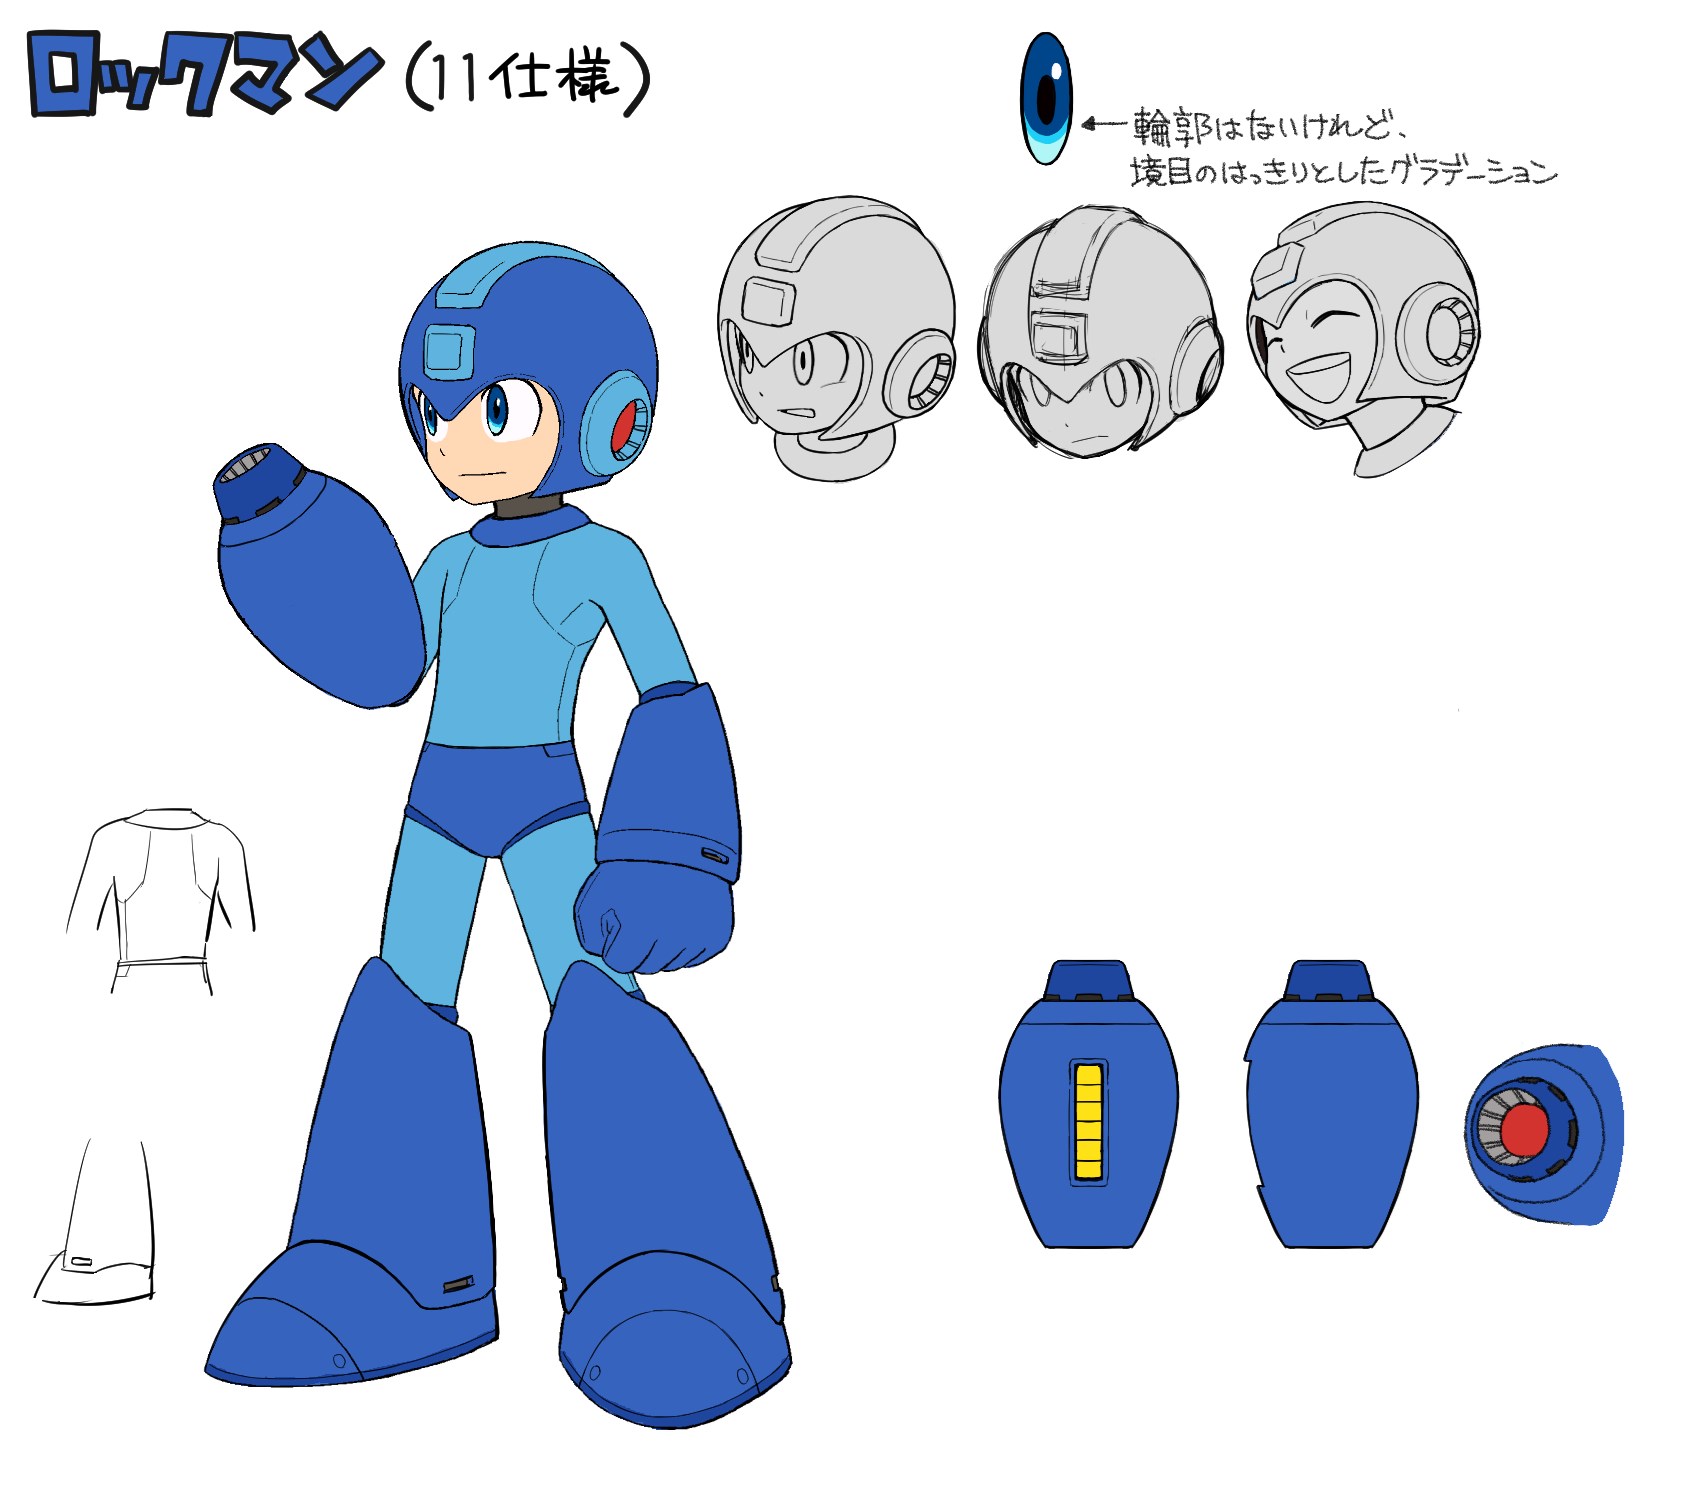 Arte conceitual de Mega Man 11